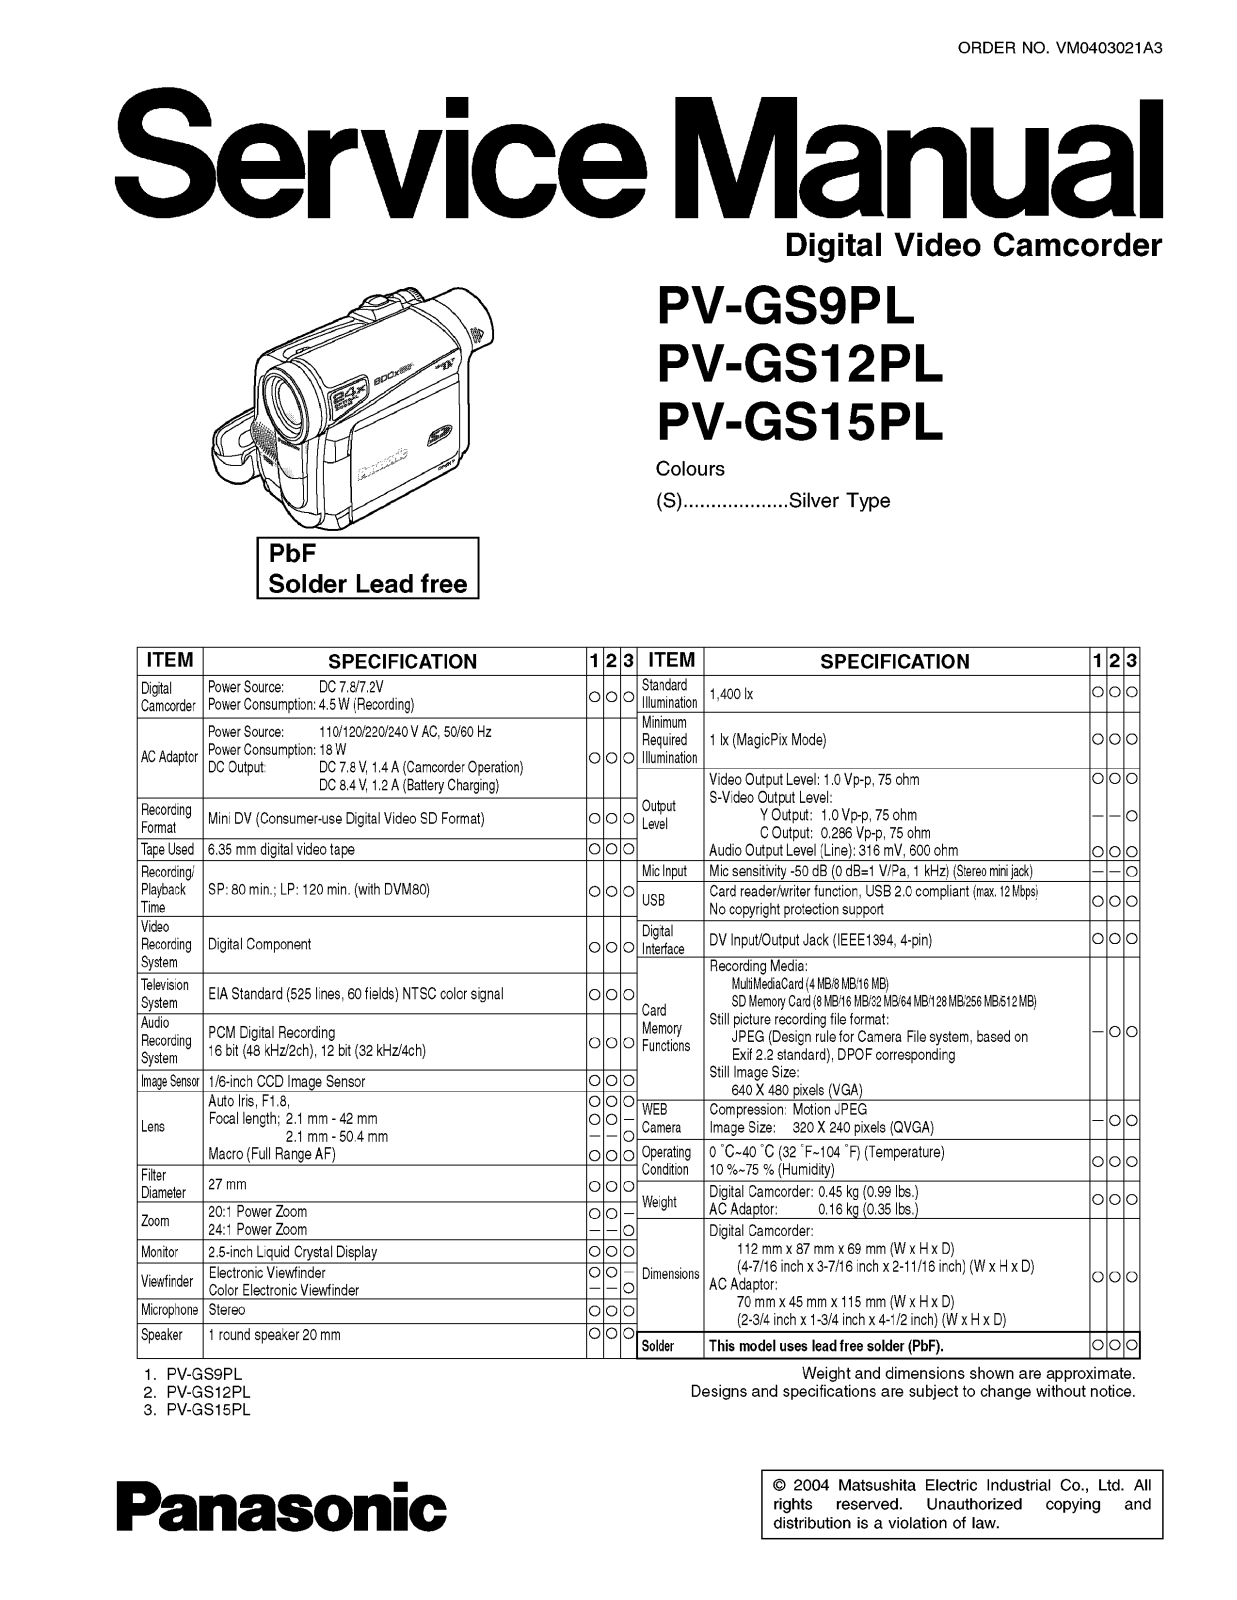 Panasonic PVGS12PL Service Manual